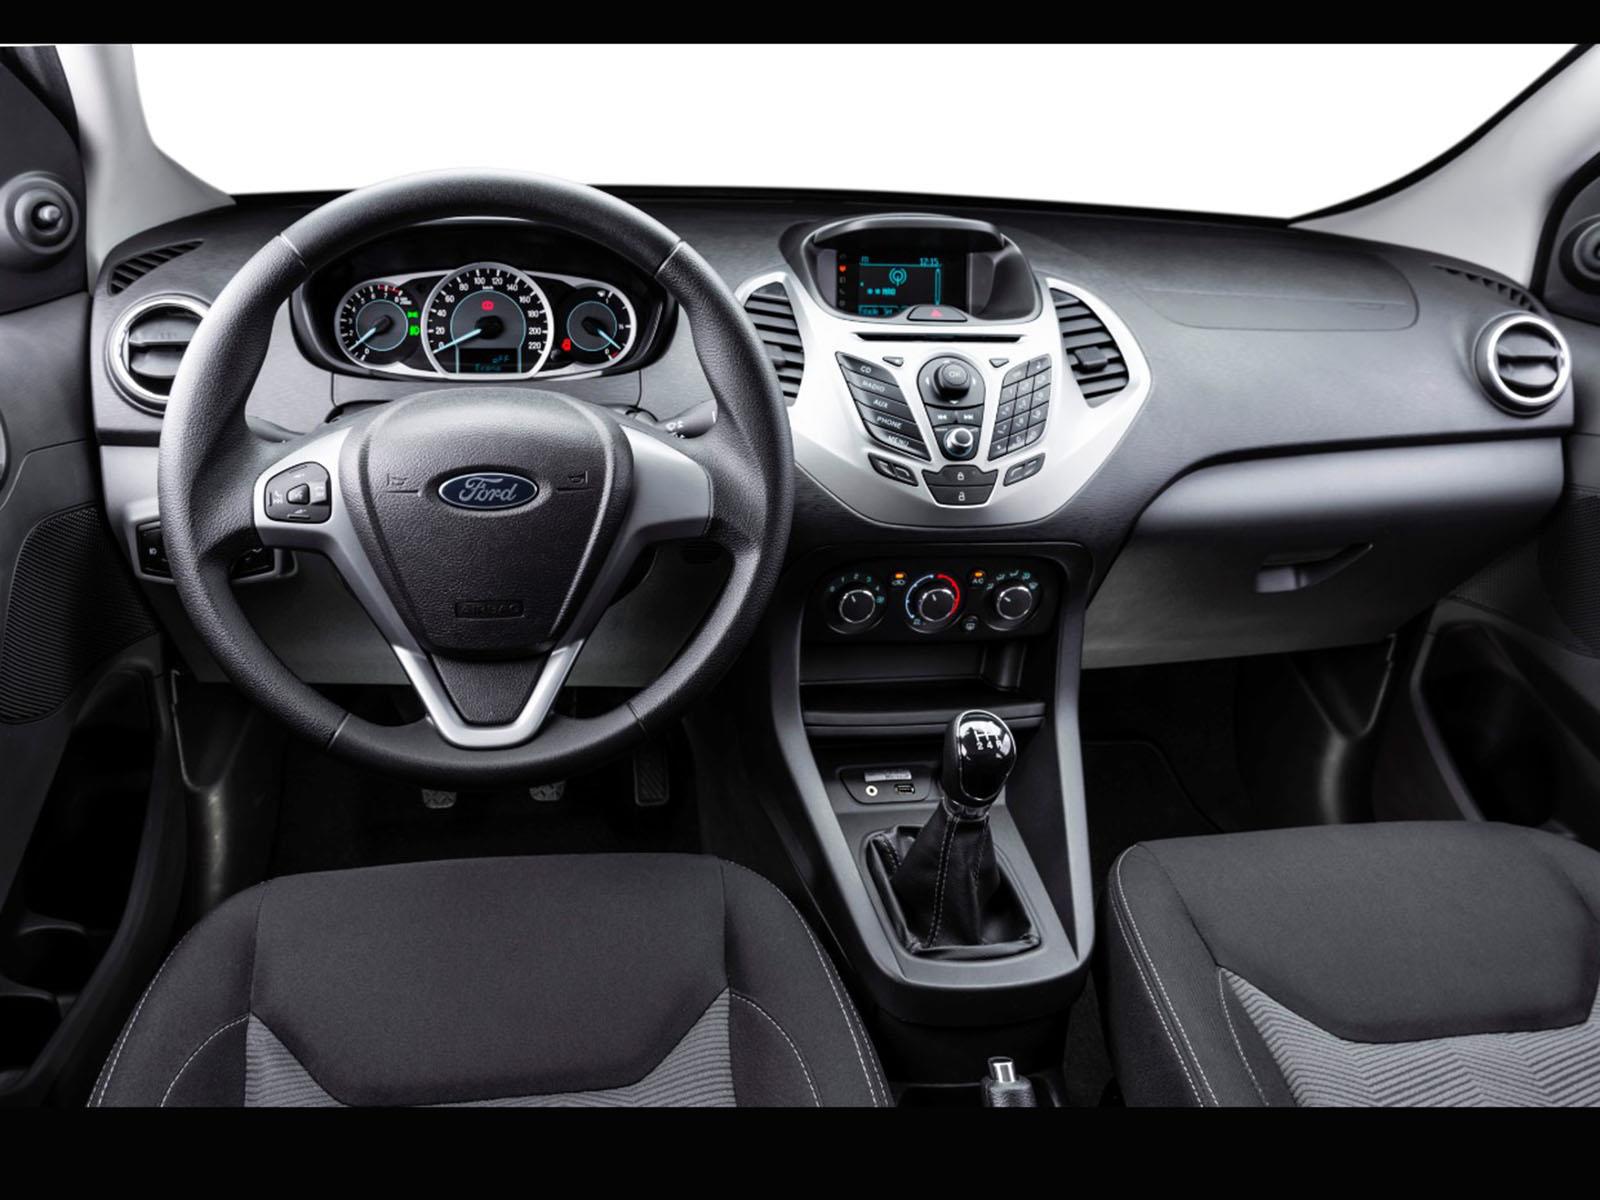 Manejamos el nuevo Ford Ka+  Autocosmos.com